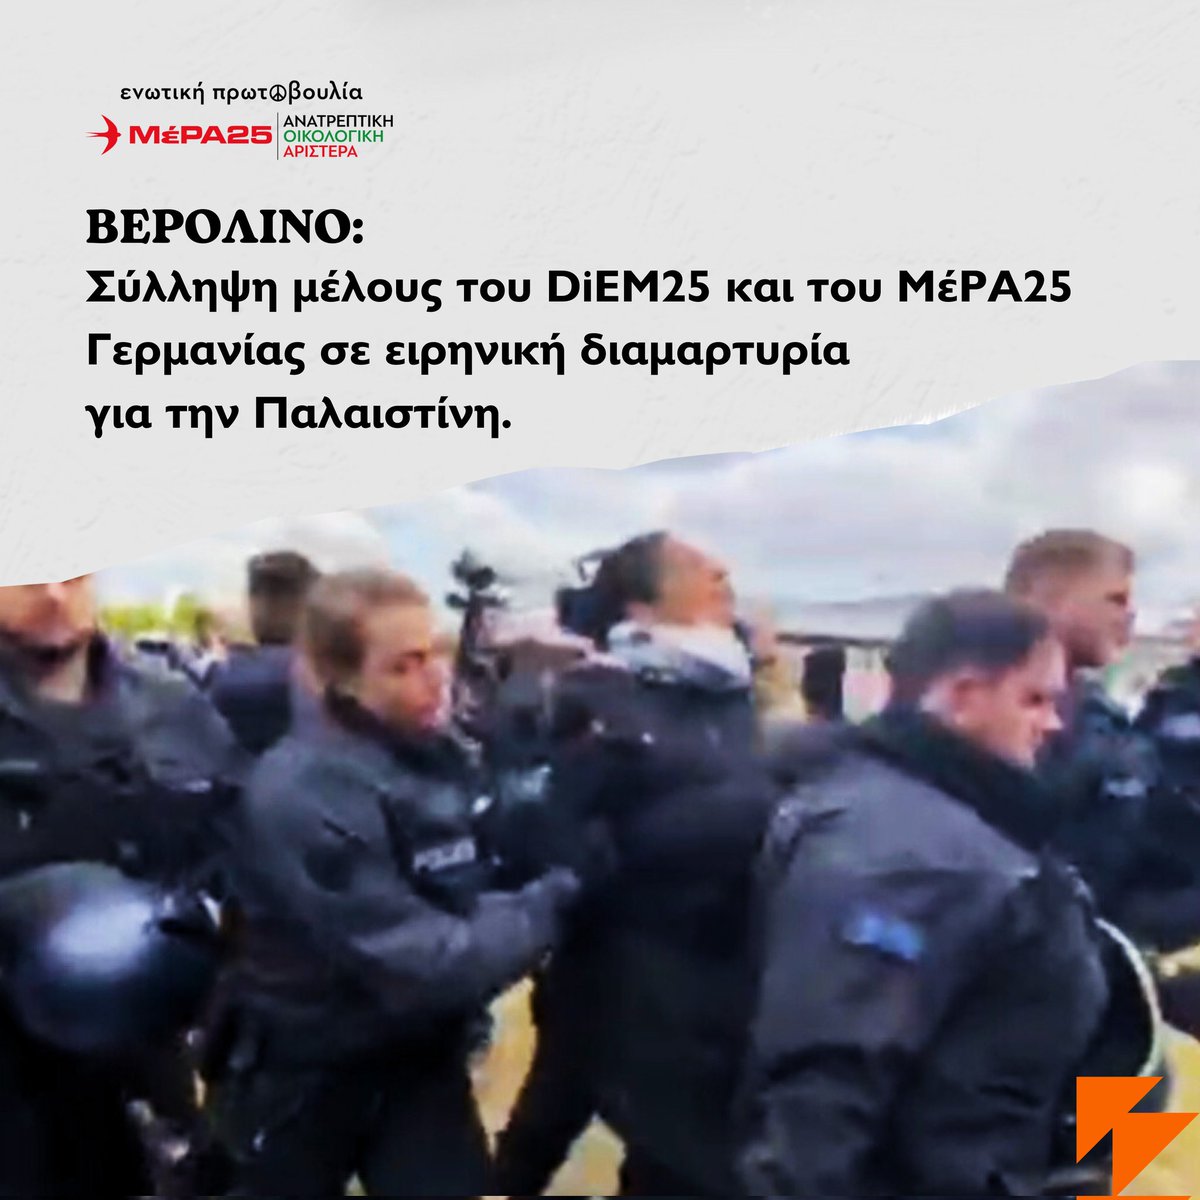 Το γερμανικό κράτος επιμένει στην κατάλυση θεμελιωδών δημοκρατικών δικαιωμάτων. Μετά την απαγόρευση εισόδου στη Γερμανία του @yanisvaroufakis, σήμερα συνελήφθη μέλος του @DiEM_25 και του @mera25_de σε διαμαρτυρία υπέρ της Παλαιστίνης έξω από το γερμανικό κοινοβούλιο. ‼️…